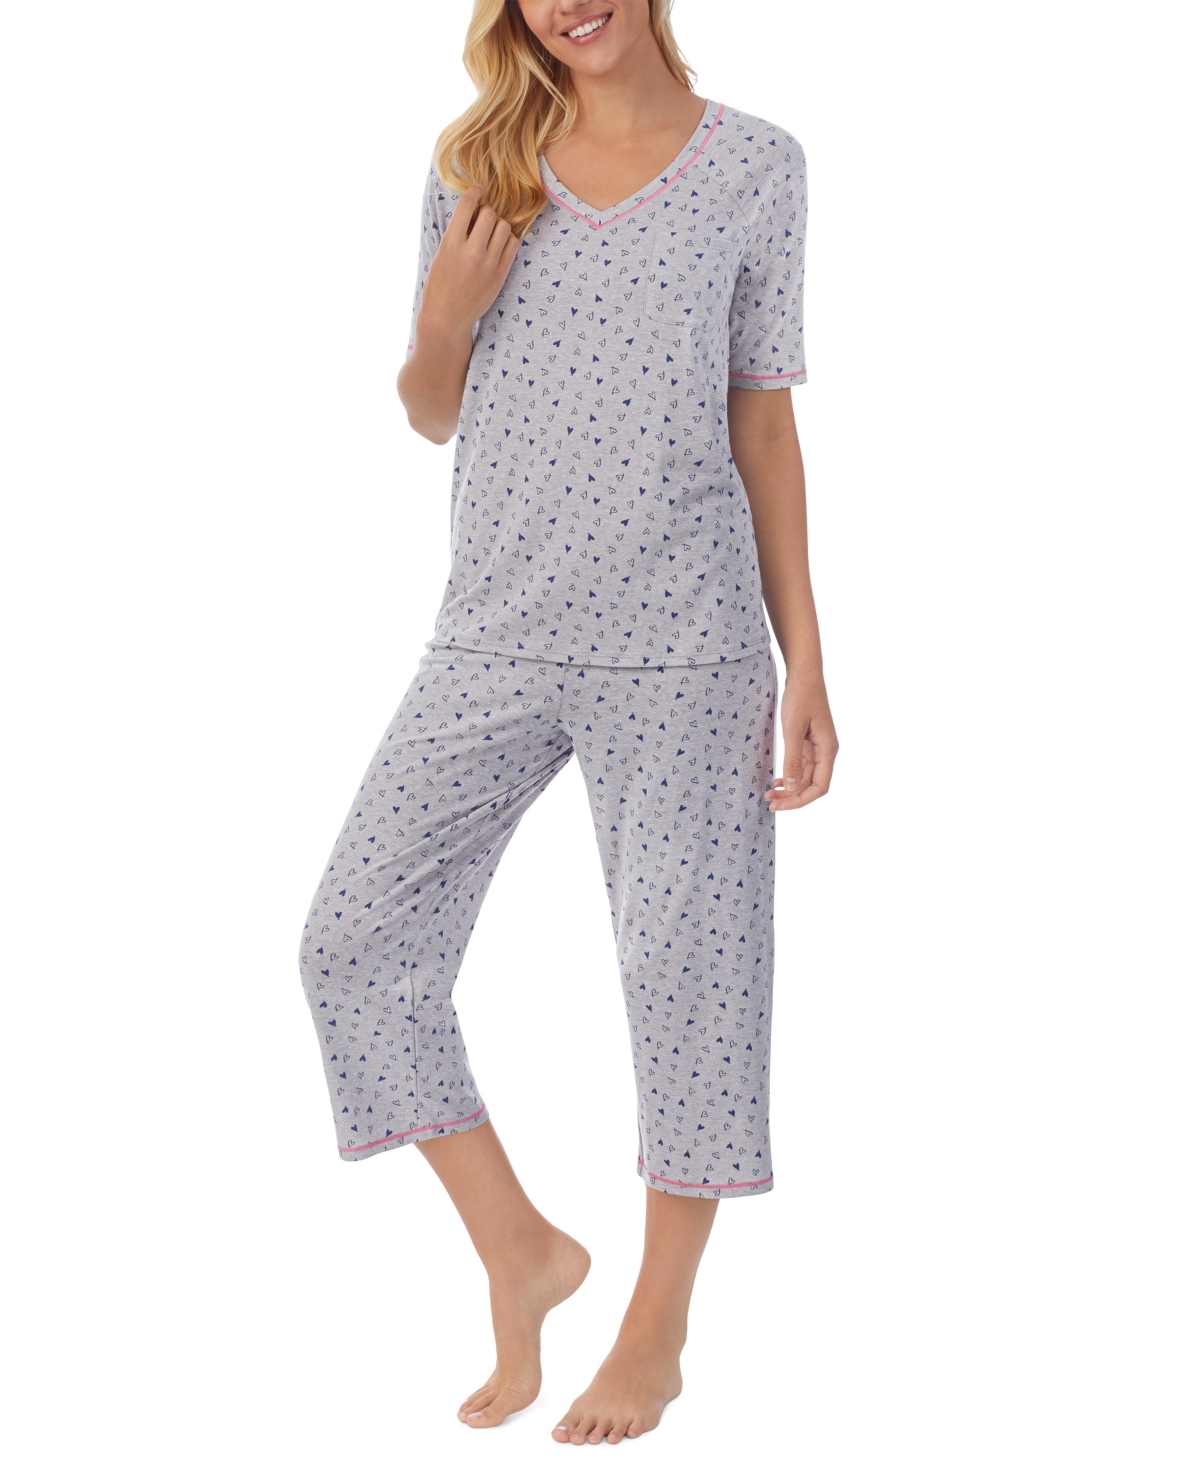 Cuddl Duds Printed Elbow-Sleeve Top & Capri Pants Pajama Set